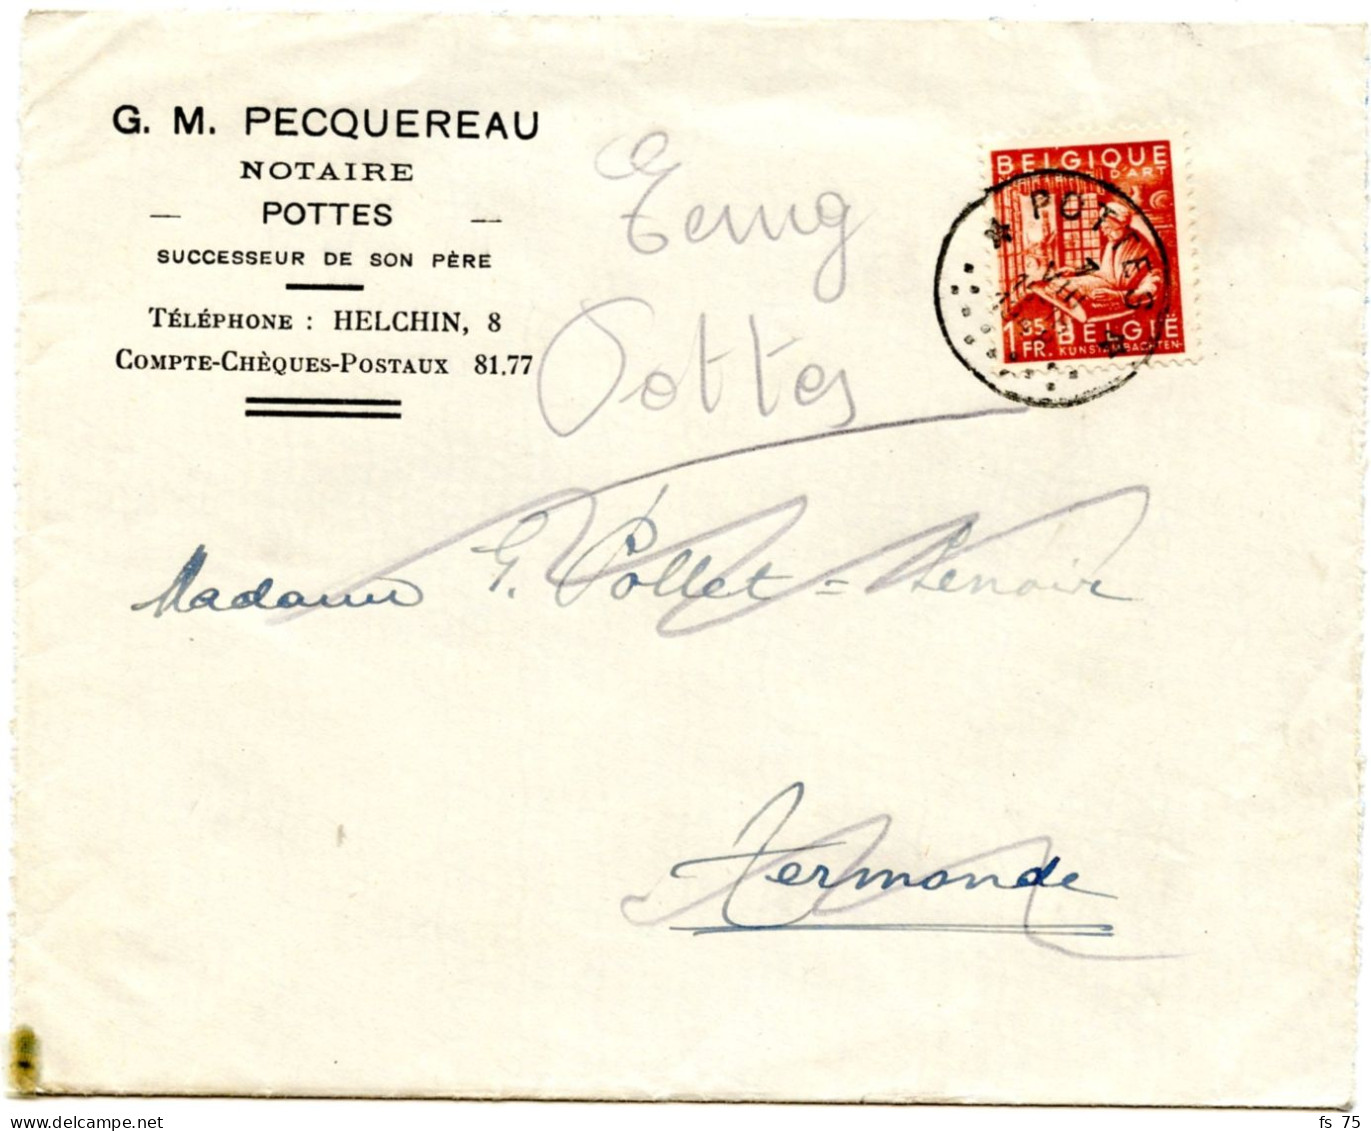 BELGIQUE - COB 762 SIMPLE CERCLE RELAIS A ETOILES POTTES SUR LETTRE, 1948 - Sternenstempel